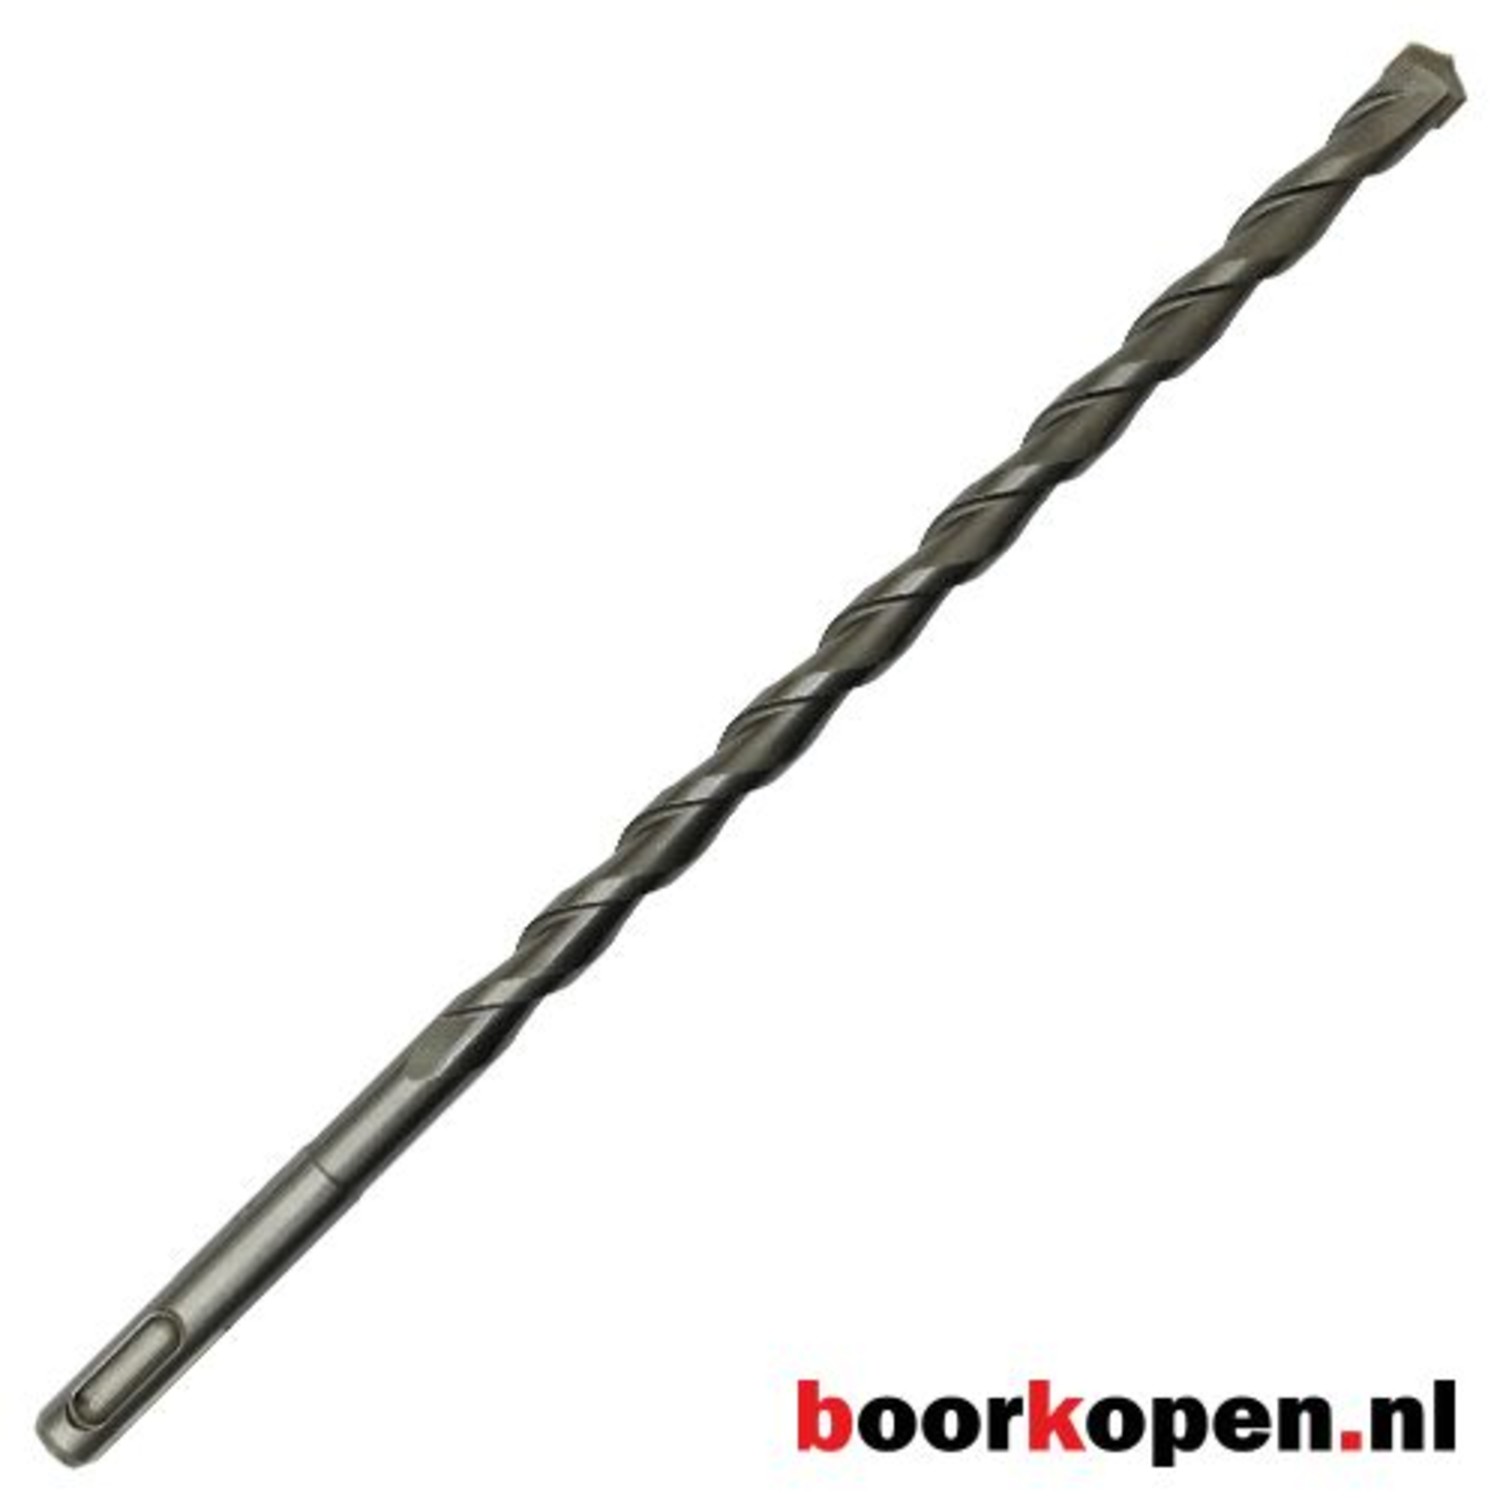 Aanpassen naar voren gebracht gewicht Betonboor 25 mm SDS-plus 310 mm lang - Boorkopen.nl